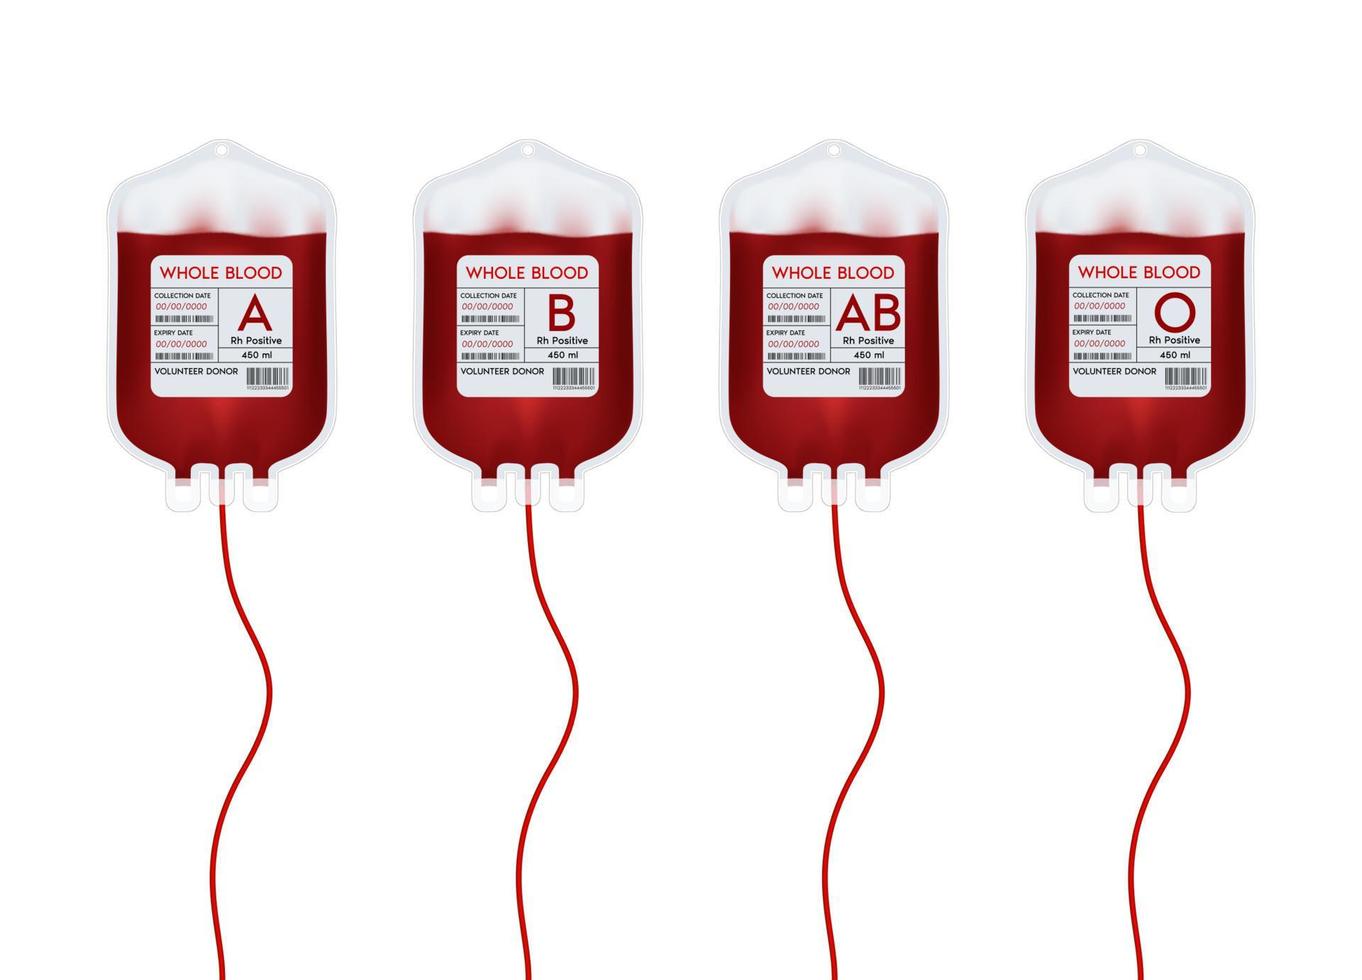 sacca sangue con etichetta diverso gruppo sanguigno a, b, o e sistema rh. idee per la donazione di sangue per aiutare il medico ferito. illustrazione 3d vettoriale eps10